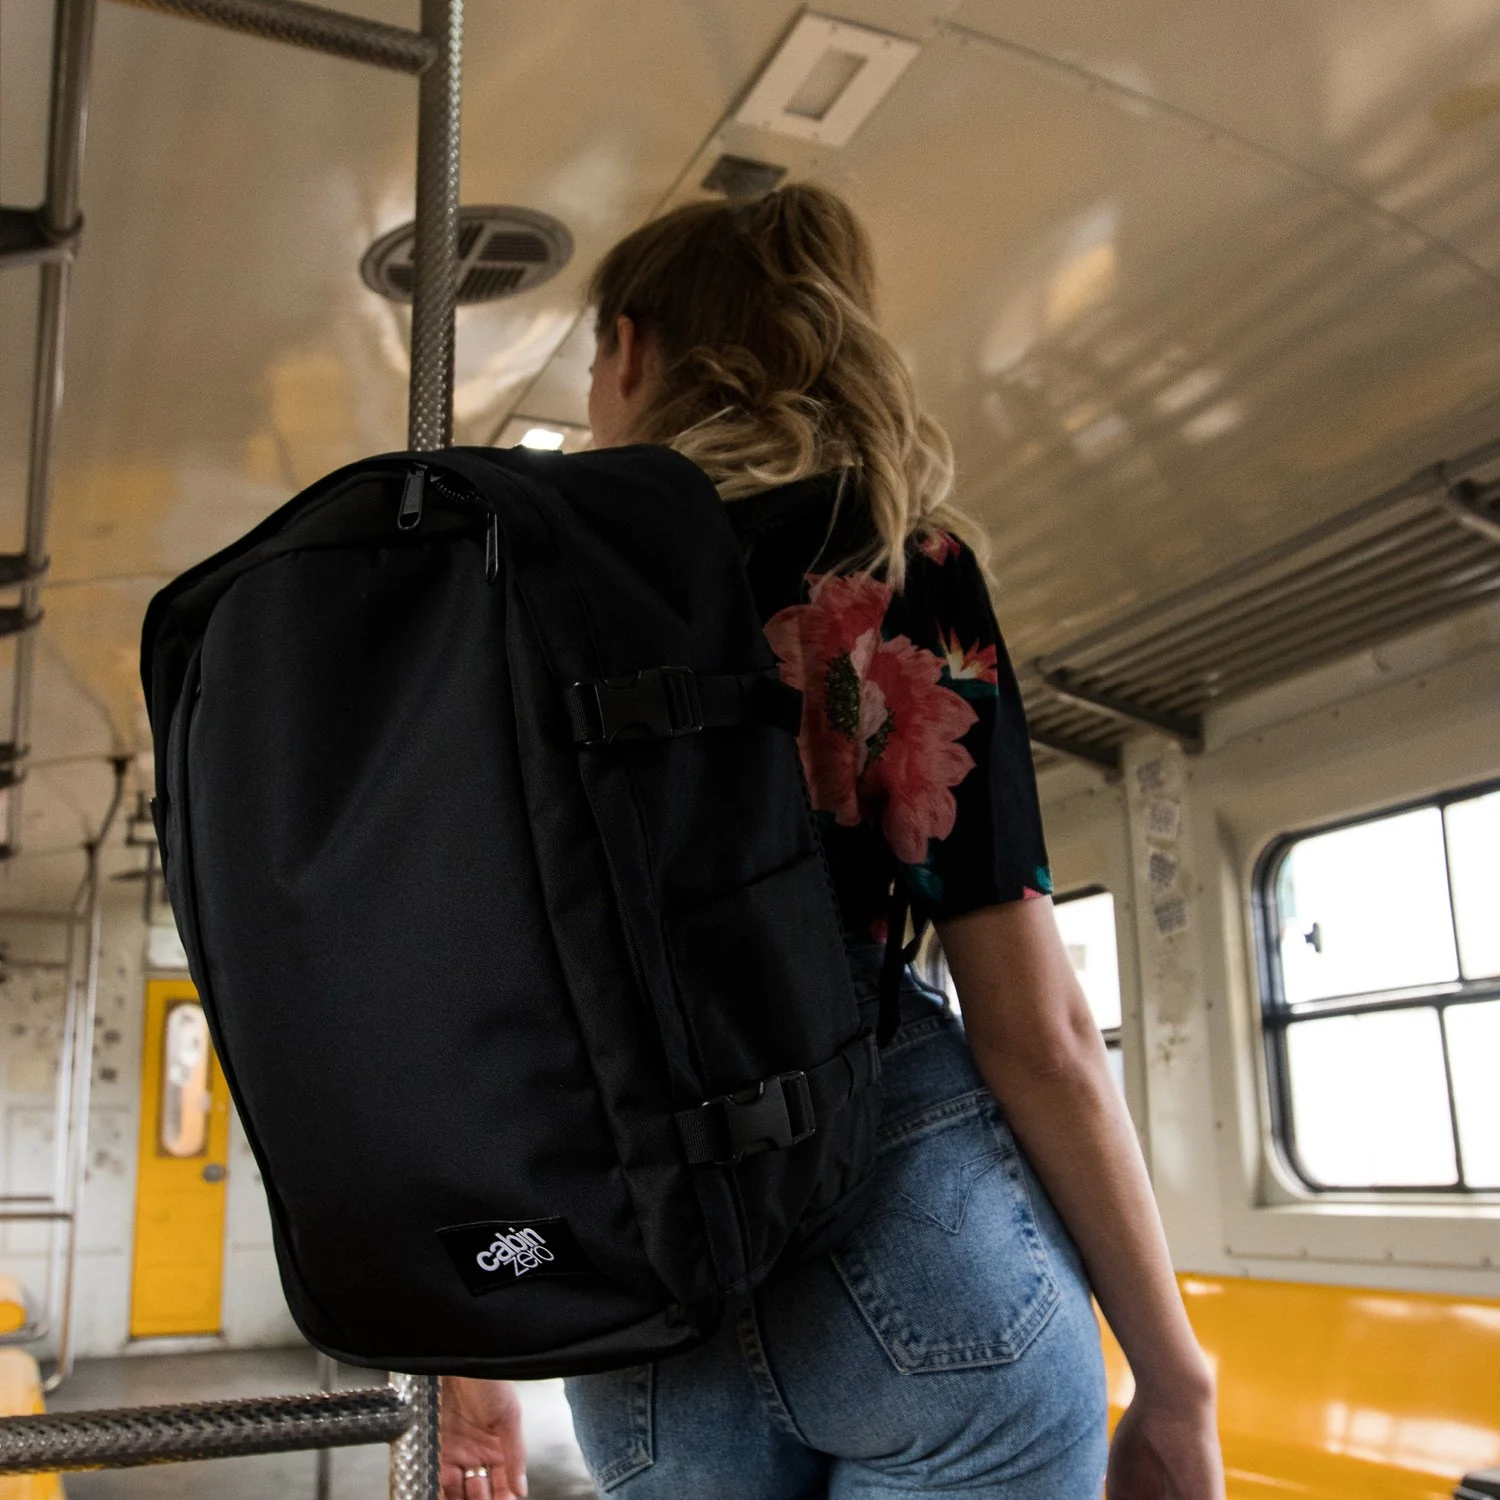 CabinZero - Classic Plus Backpack